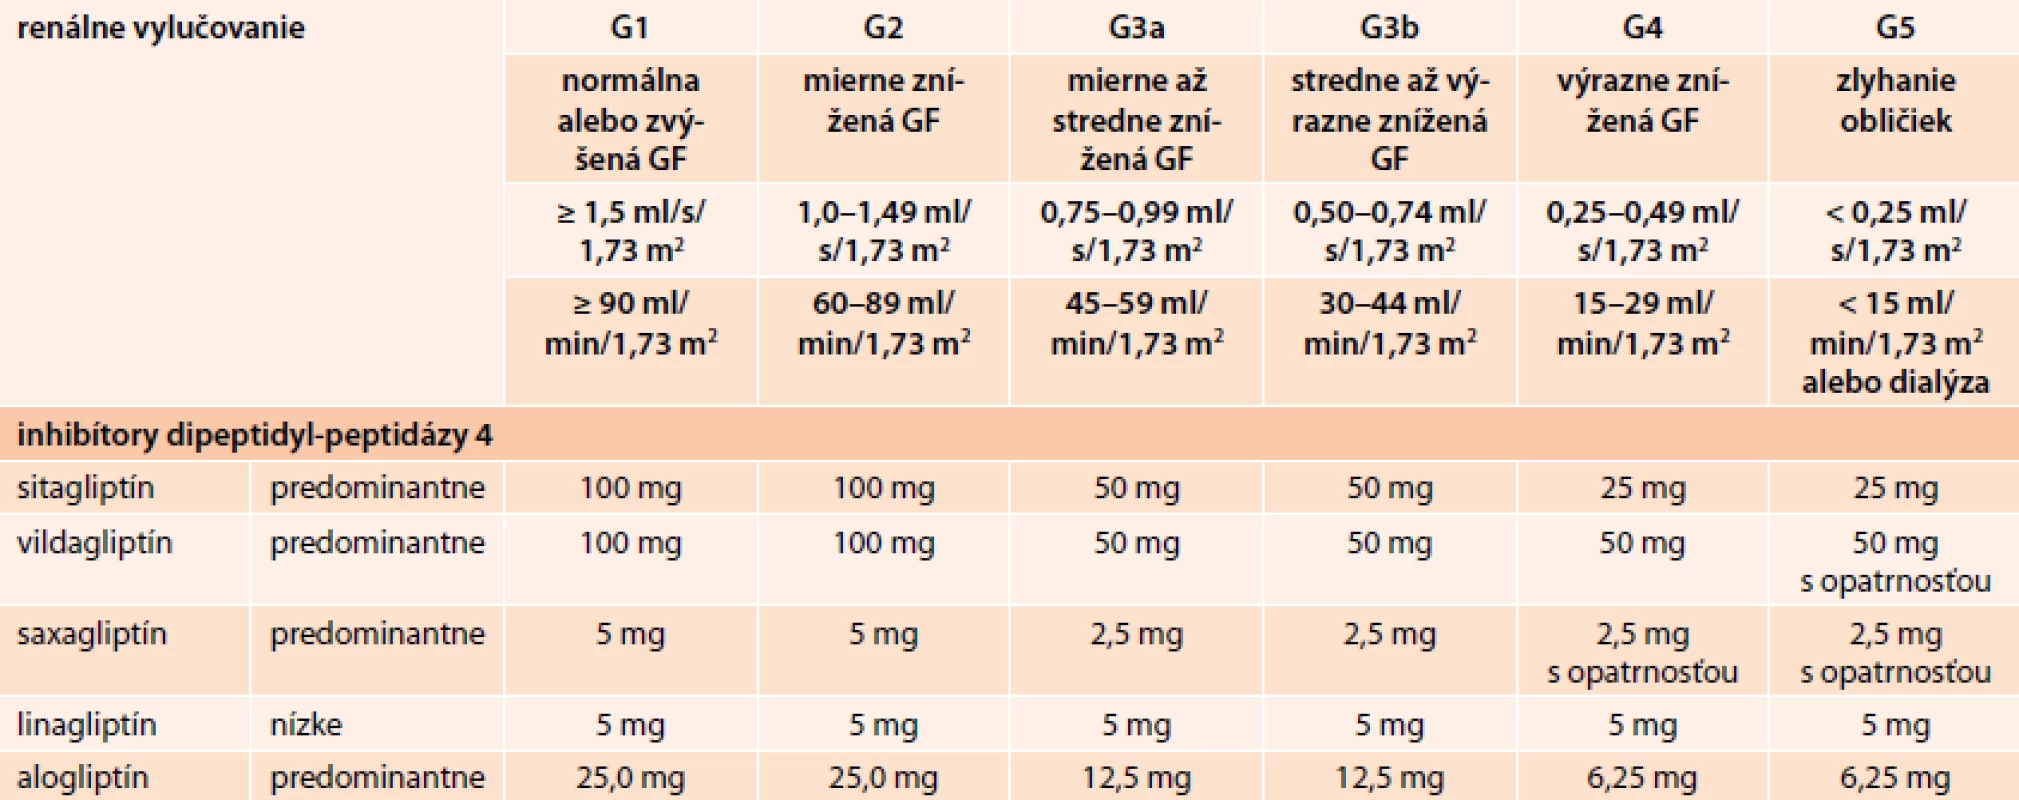 Dávkovanie inhibítorov DPP4 (mg/die) v rôznych štádiách chronickej choroby obličiek (CKD) klasifikovanej podľa KDIGO 2012. Upravené podľa [10]